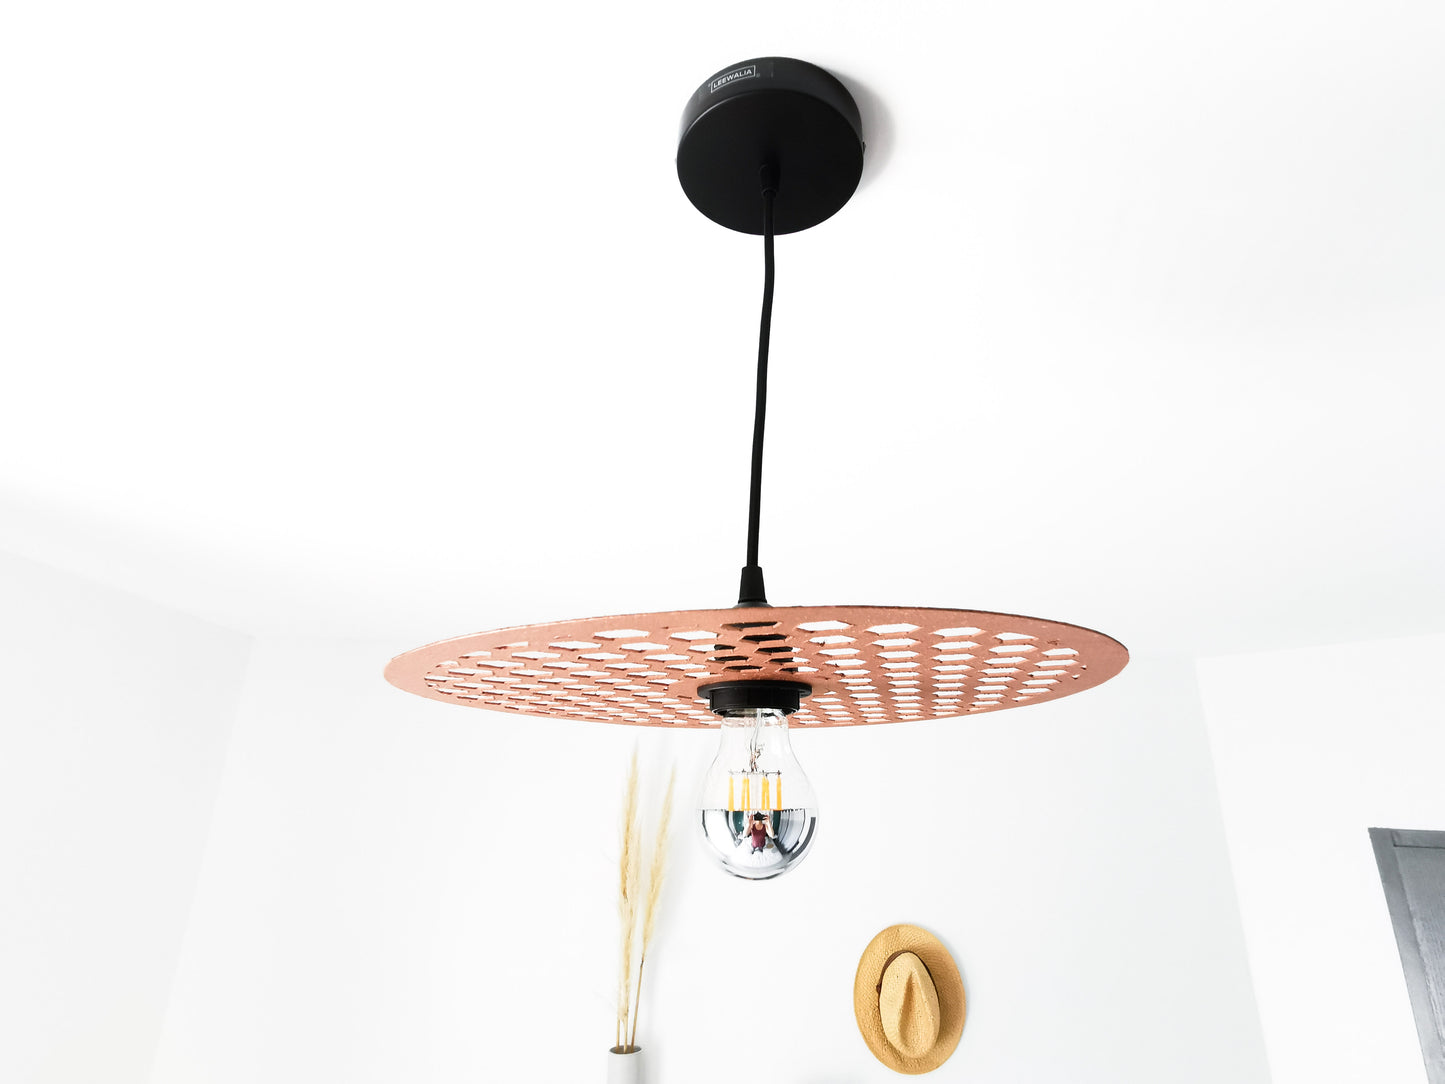 une lampe suspendue aux allures vintage grâce à sa couleur cuivrée